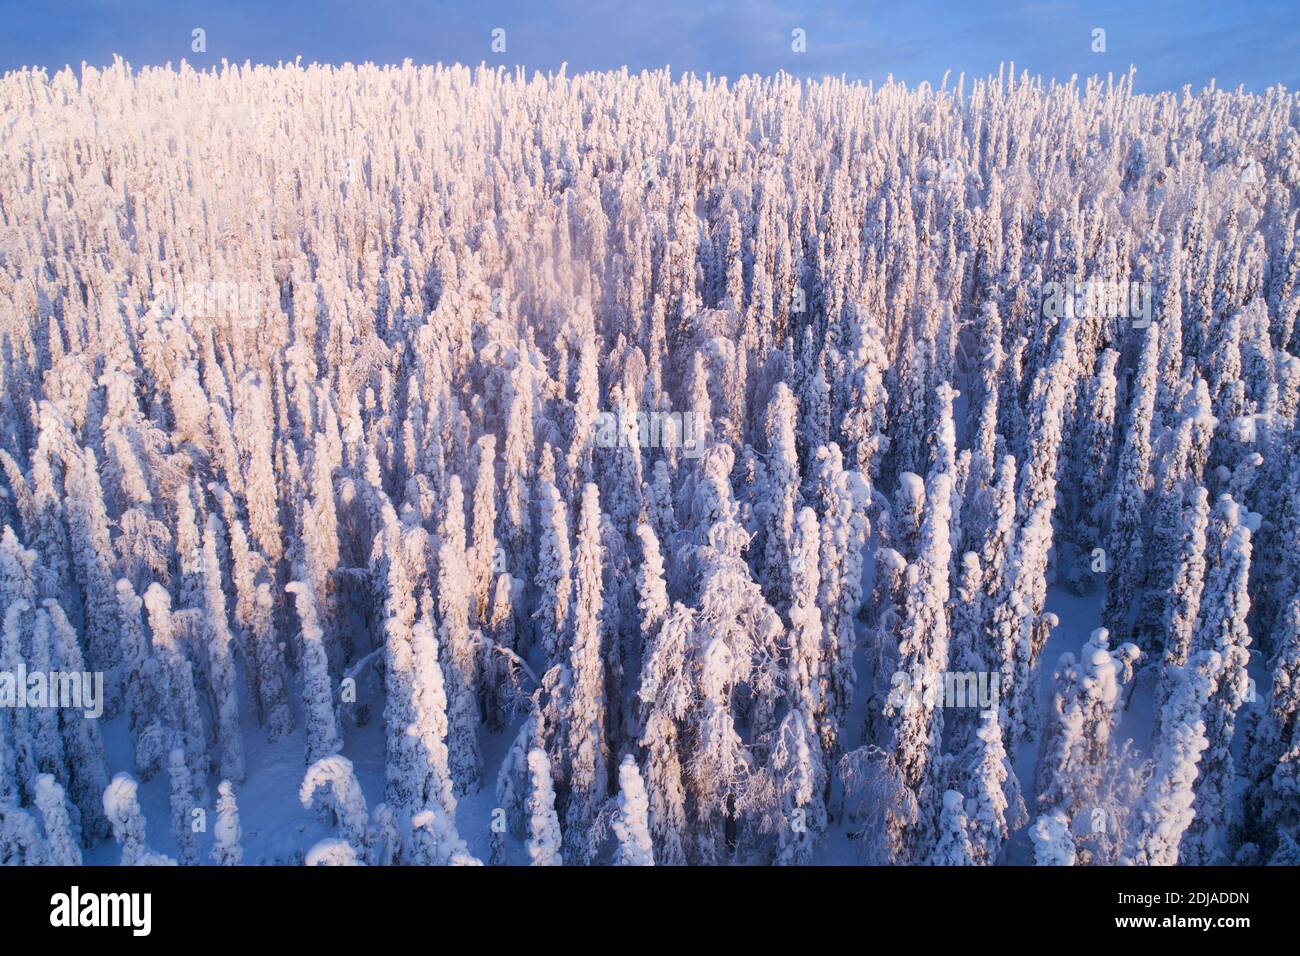 Gli alberi di abete ricoperti di neve pesante in un freddo paese delle meraviglie invernali a Konttainen caddero, vicino a Kuusamo, Finlandia settentrionale Foto Stock